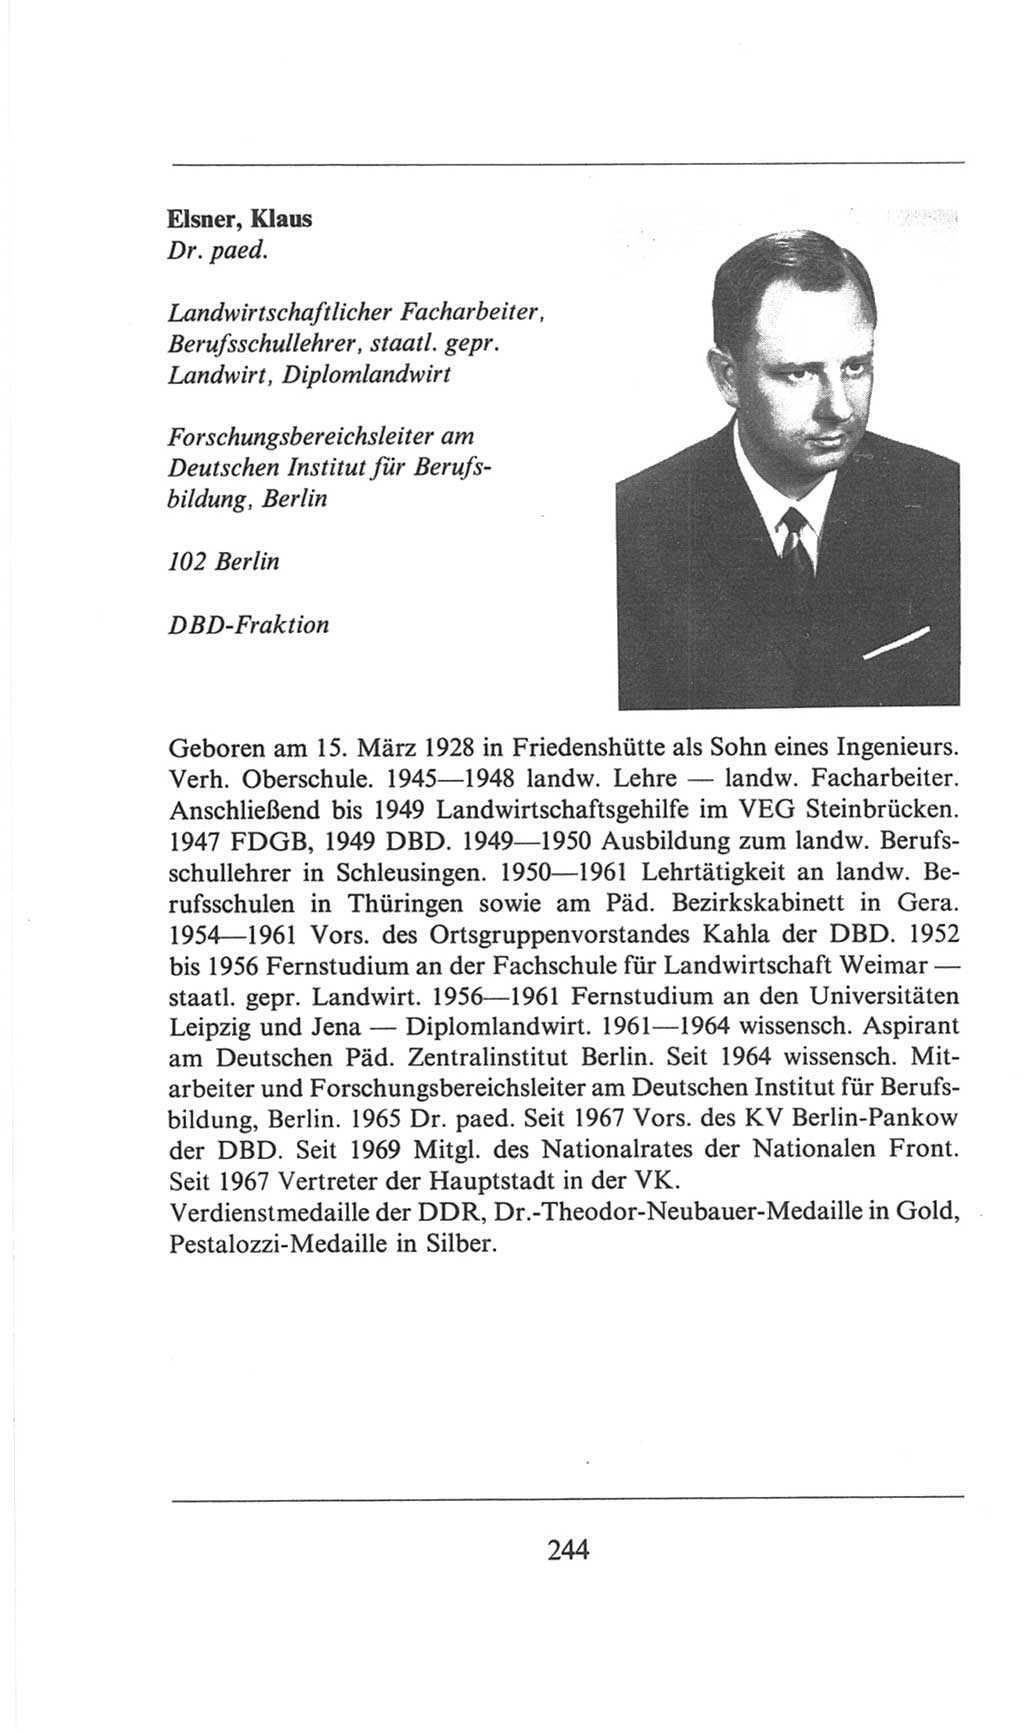 Volkskammer (VK) der Deutschen Demokratischen Republik (DDR), 6. Wahlperiode 1971-1976, Seite 244 (VK. DDR 6. WP. 1971-1976, S. 244)